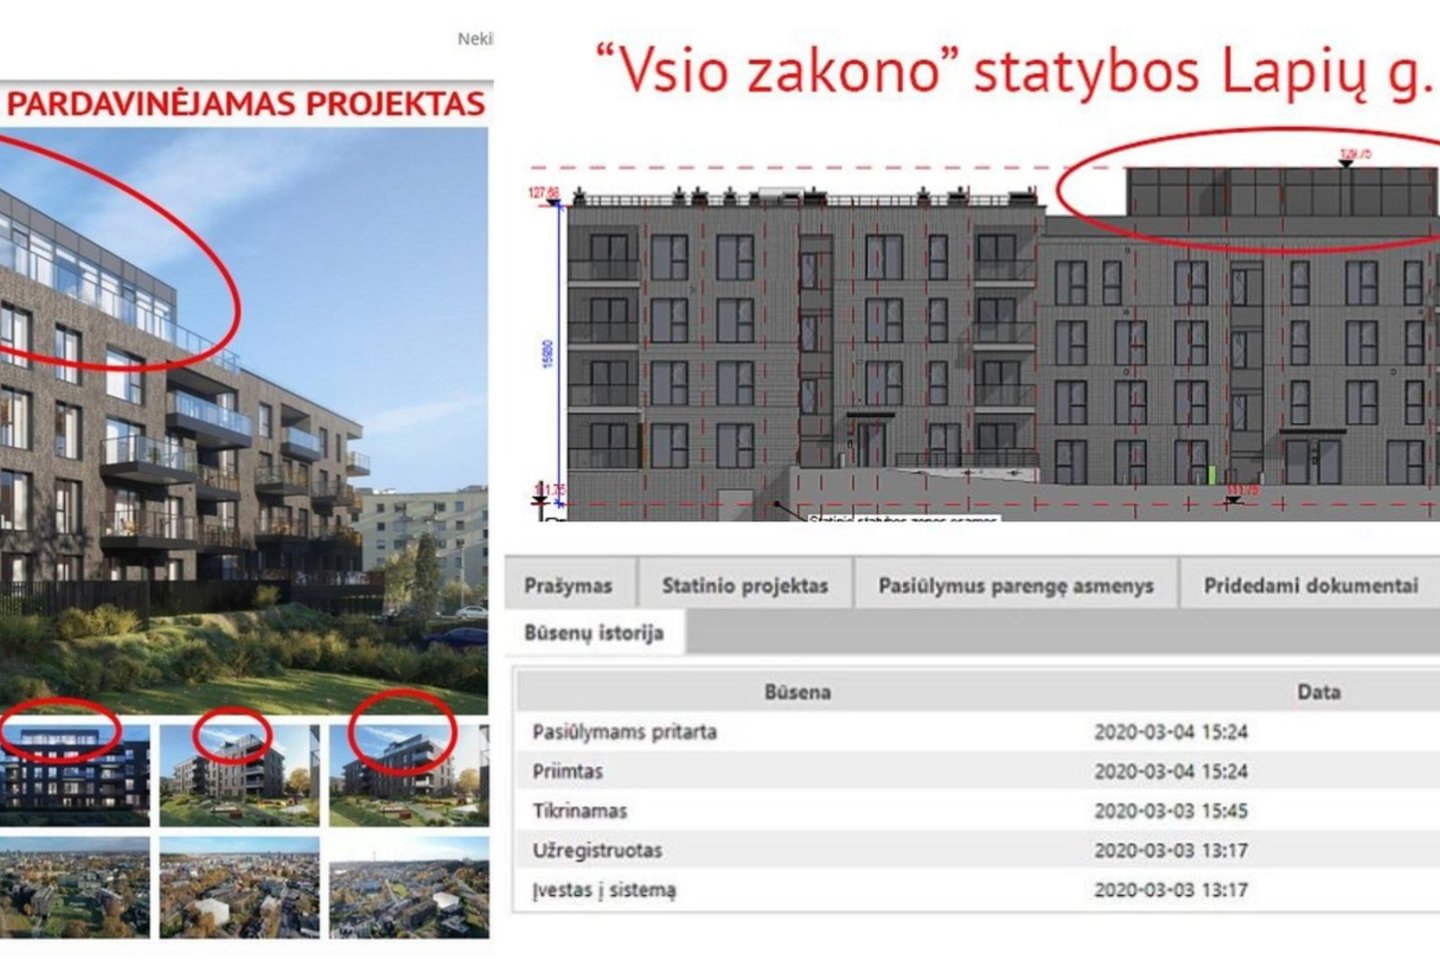 Administracinės paskirties pastato su gyvenamosiomis patalpomis Lapių g. 3 projektiniams pasiūlymams pritarta per dieną.<br>Socialinio tinklo vizual.